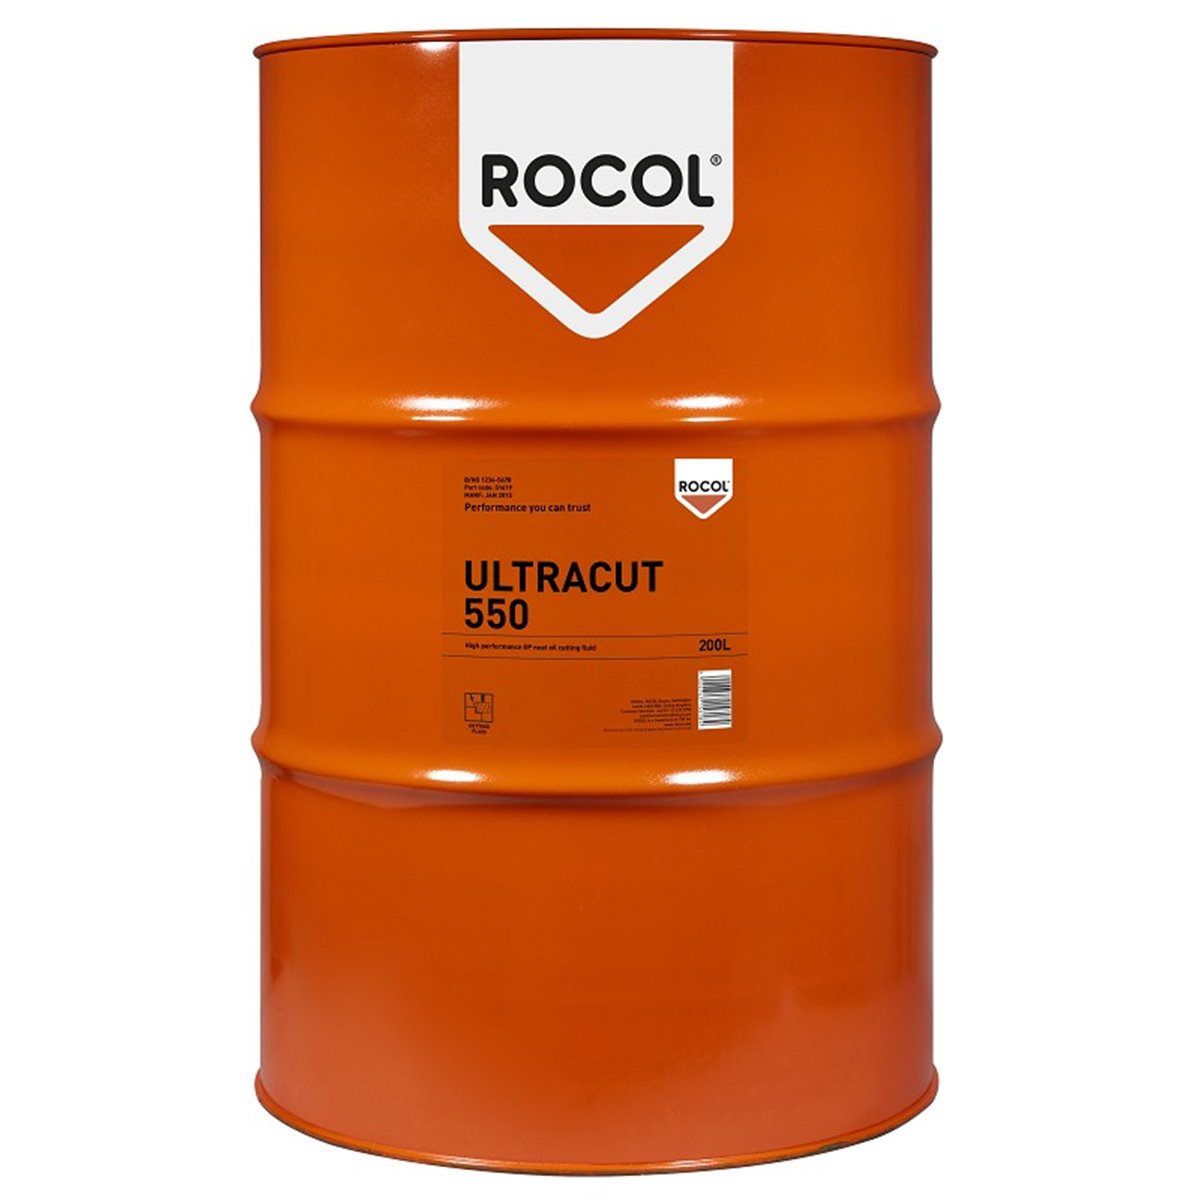 ULTRACUT 550 Rocol 200l RS51619